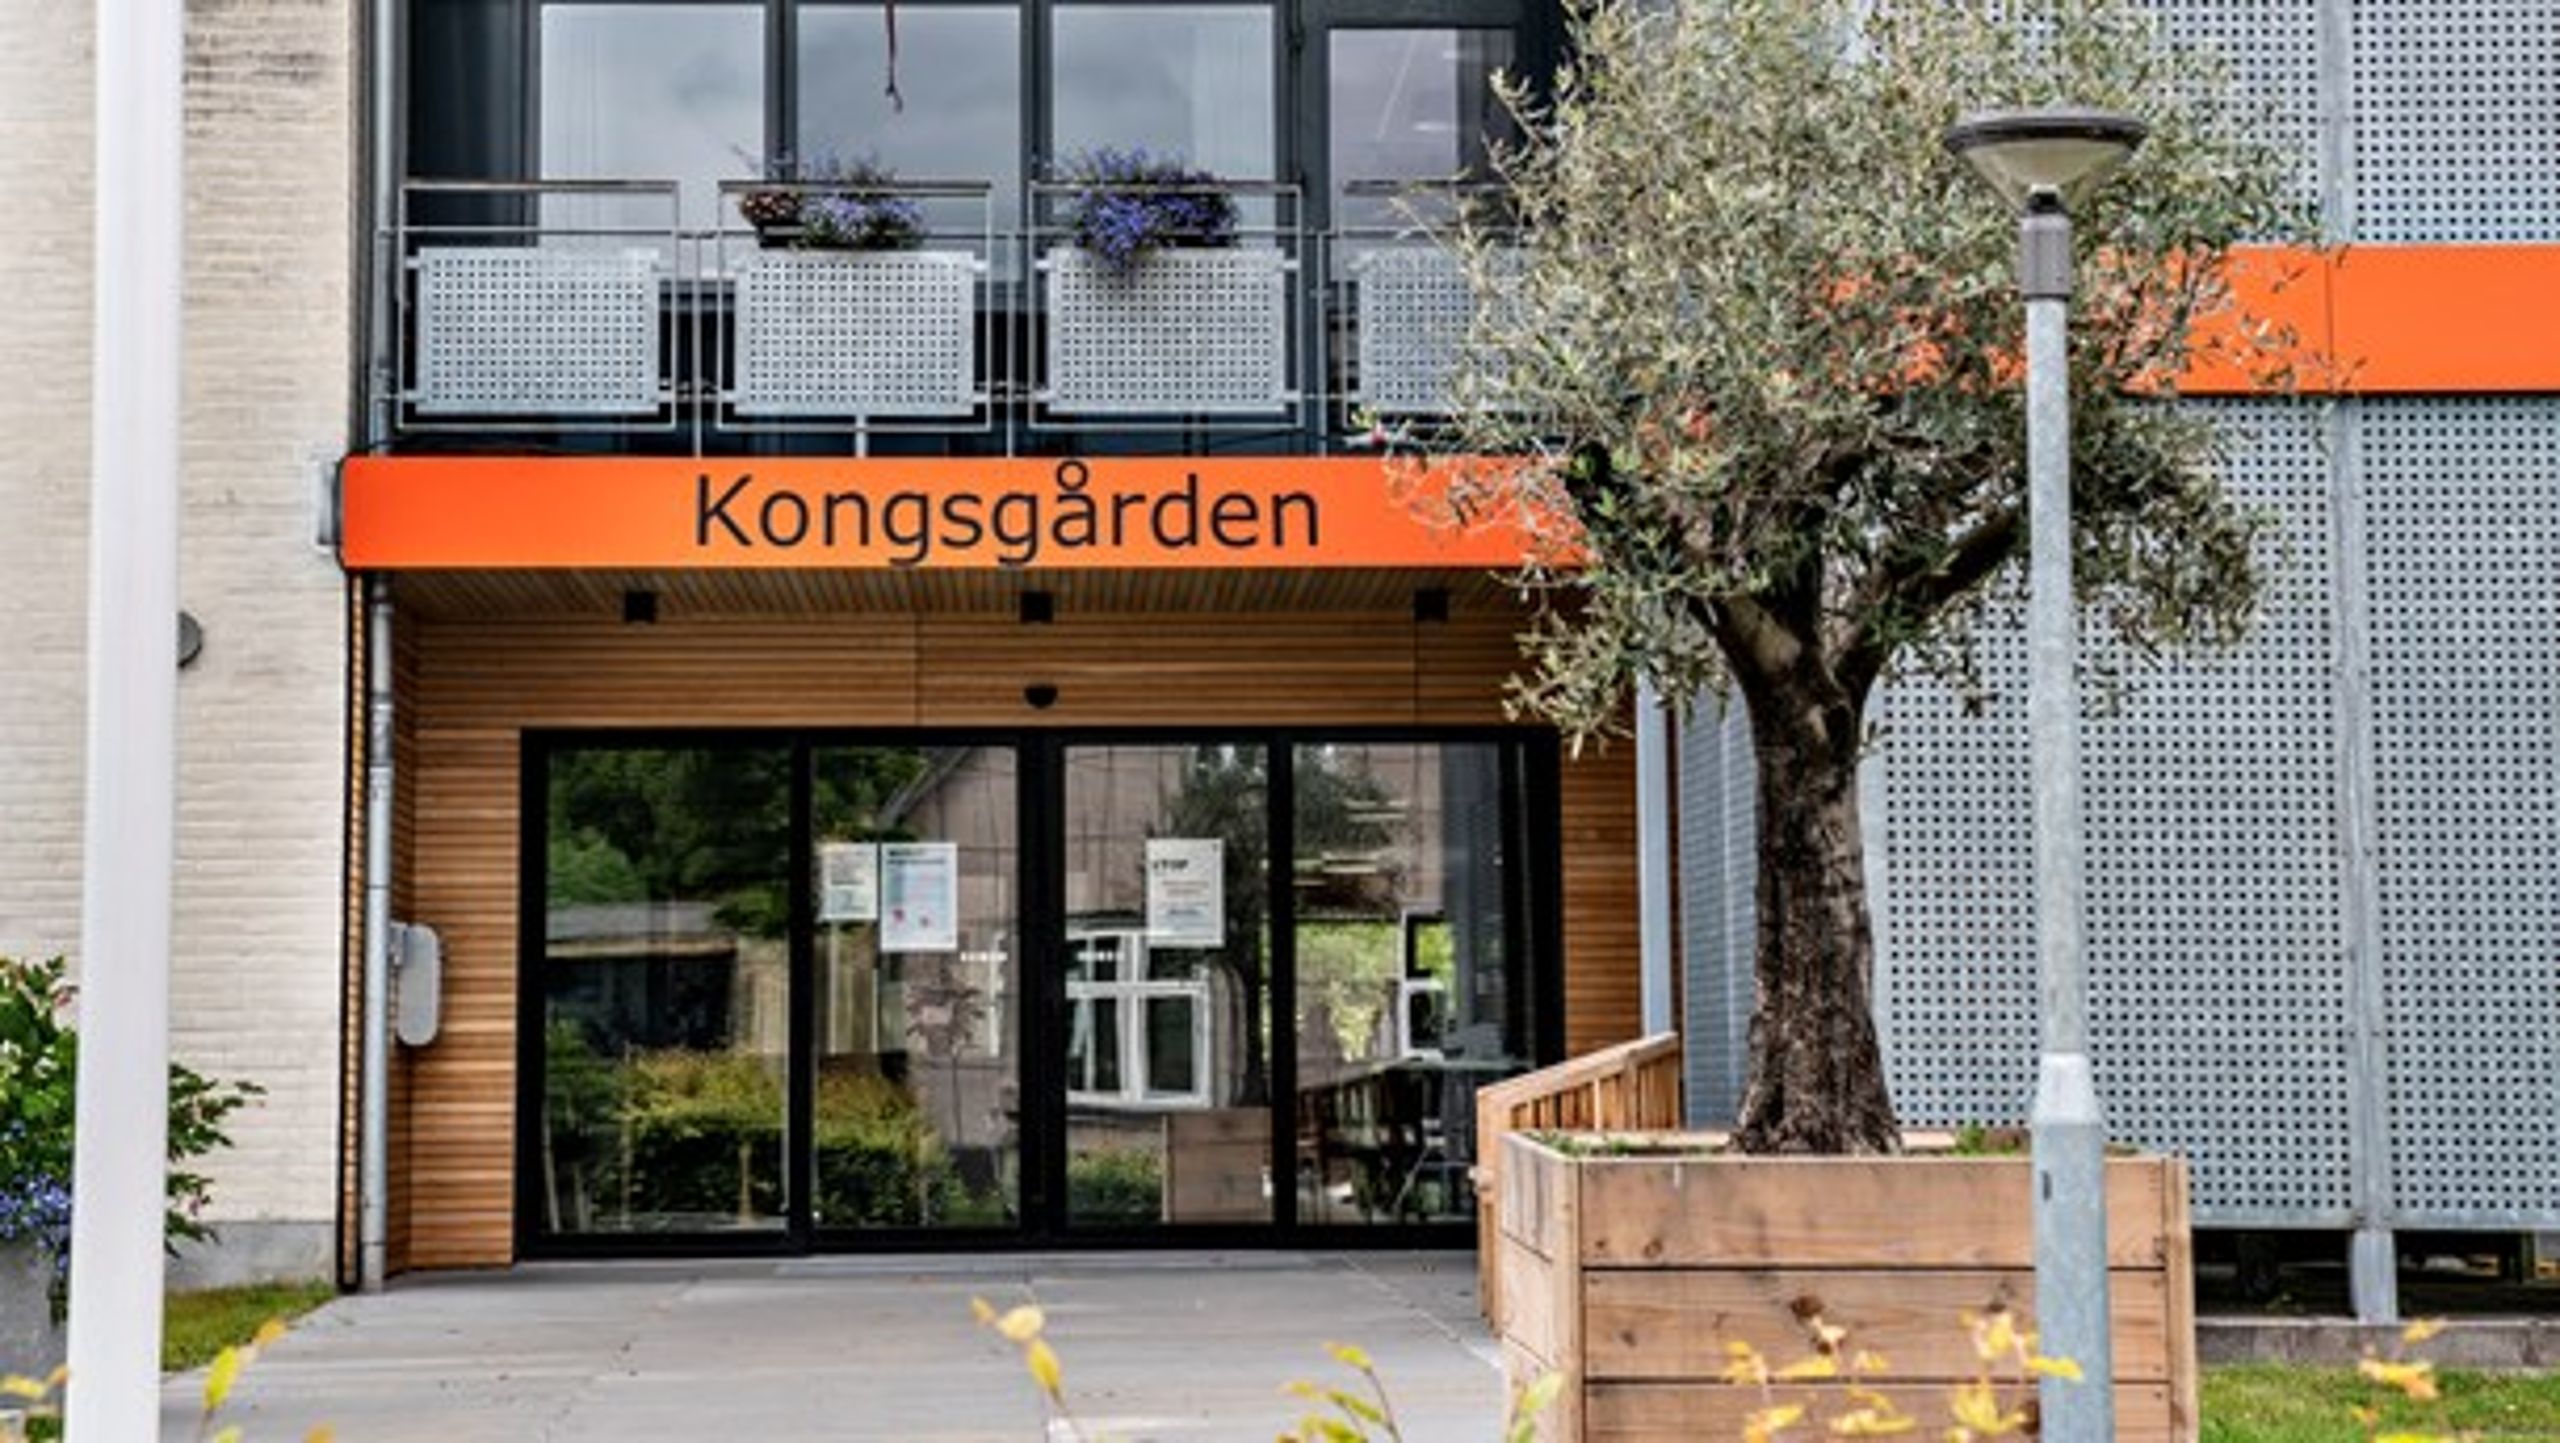 Sagen om plejehjemmet Kongsgården i Aarhus har ført til mudderkast mellem aktører på ældreområdet, skriver Selveje Danmarks branchedirektør.